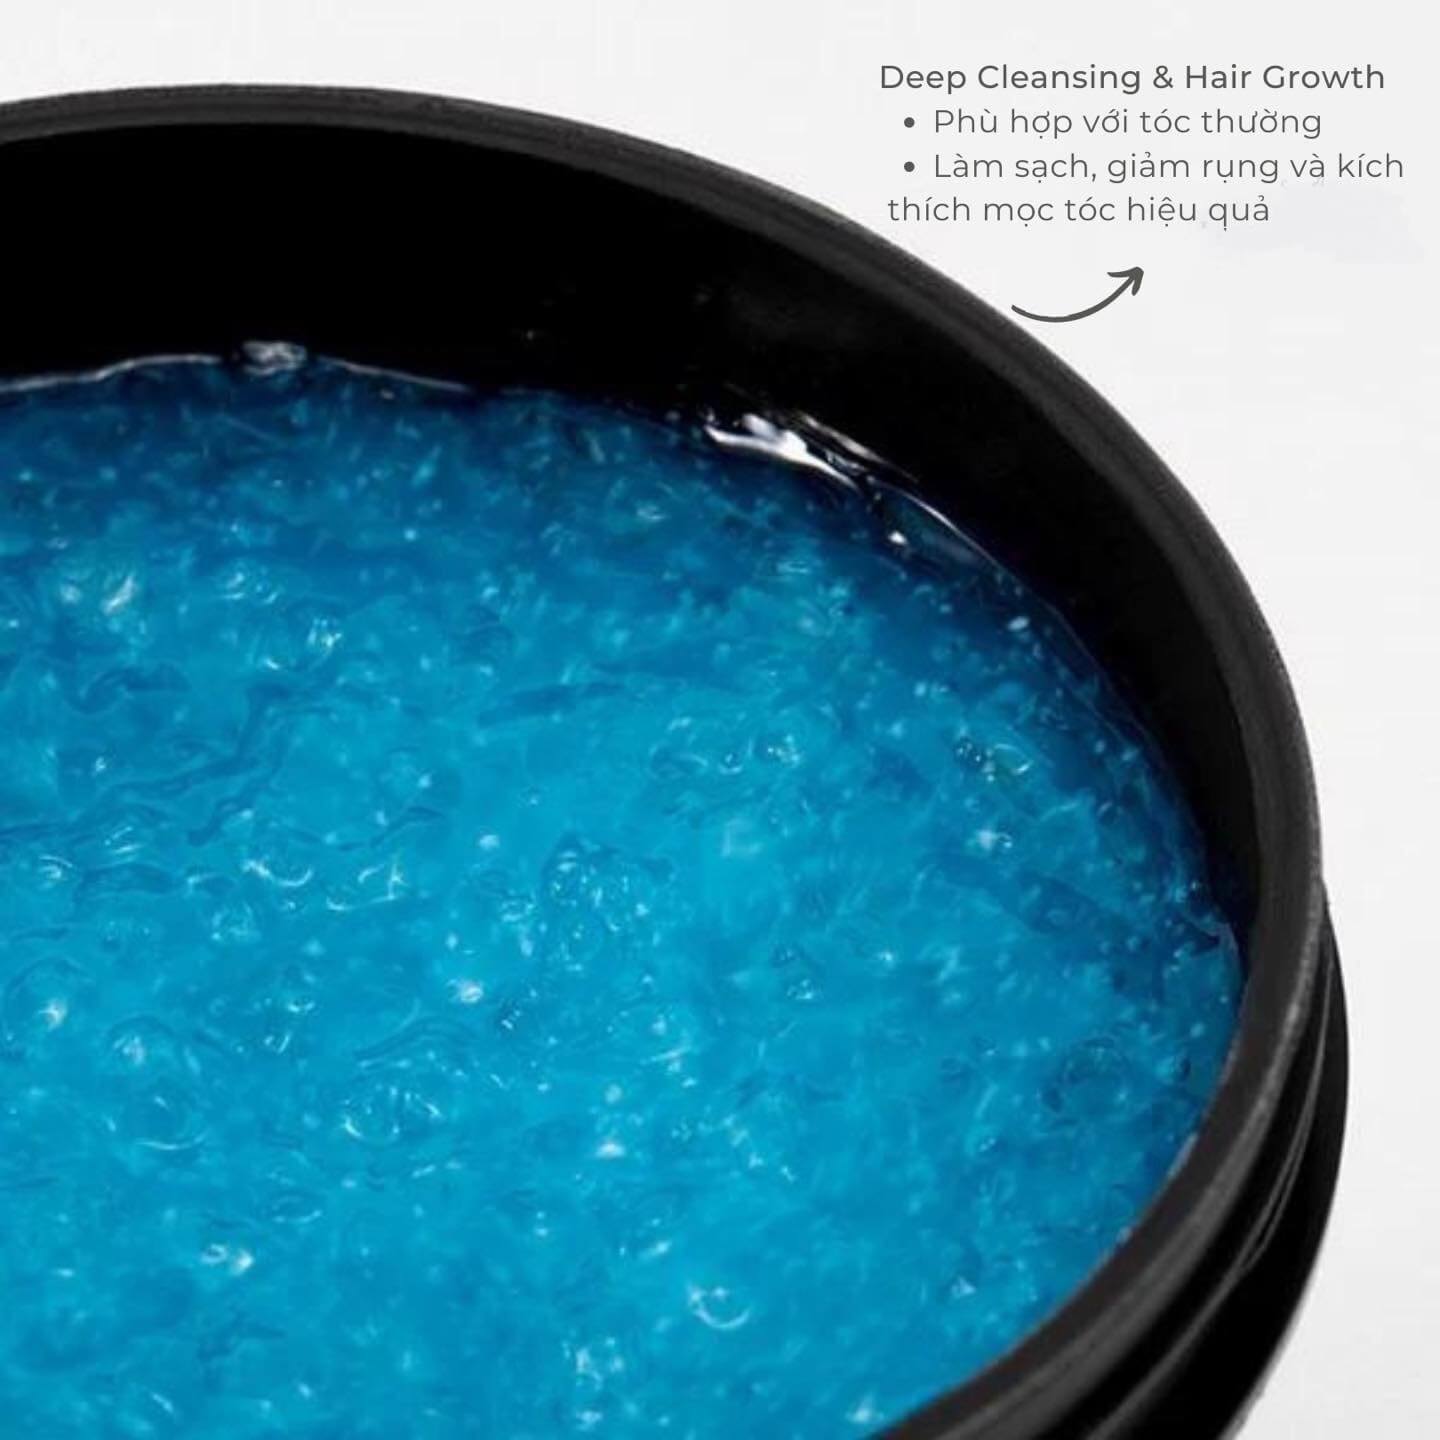 Deep Cleansing & Hair Growth (màu xanh dương)